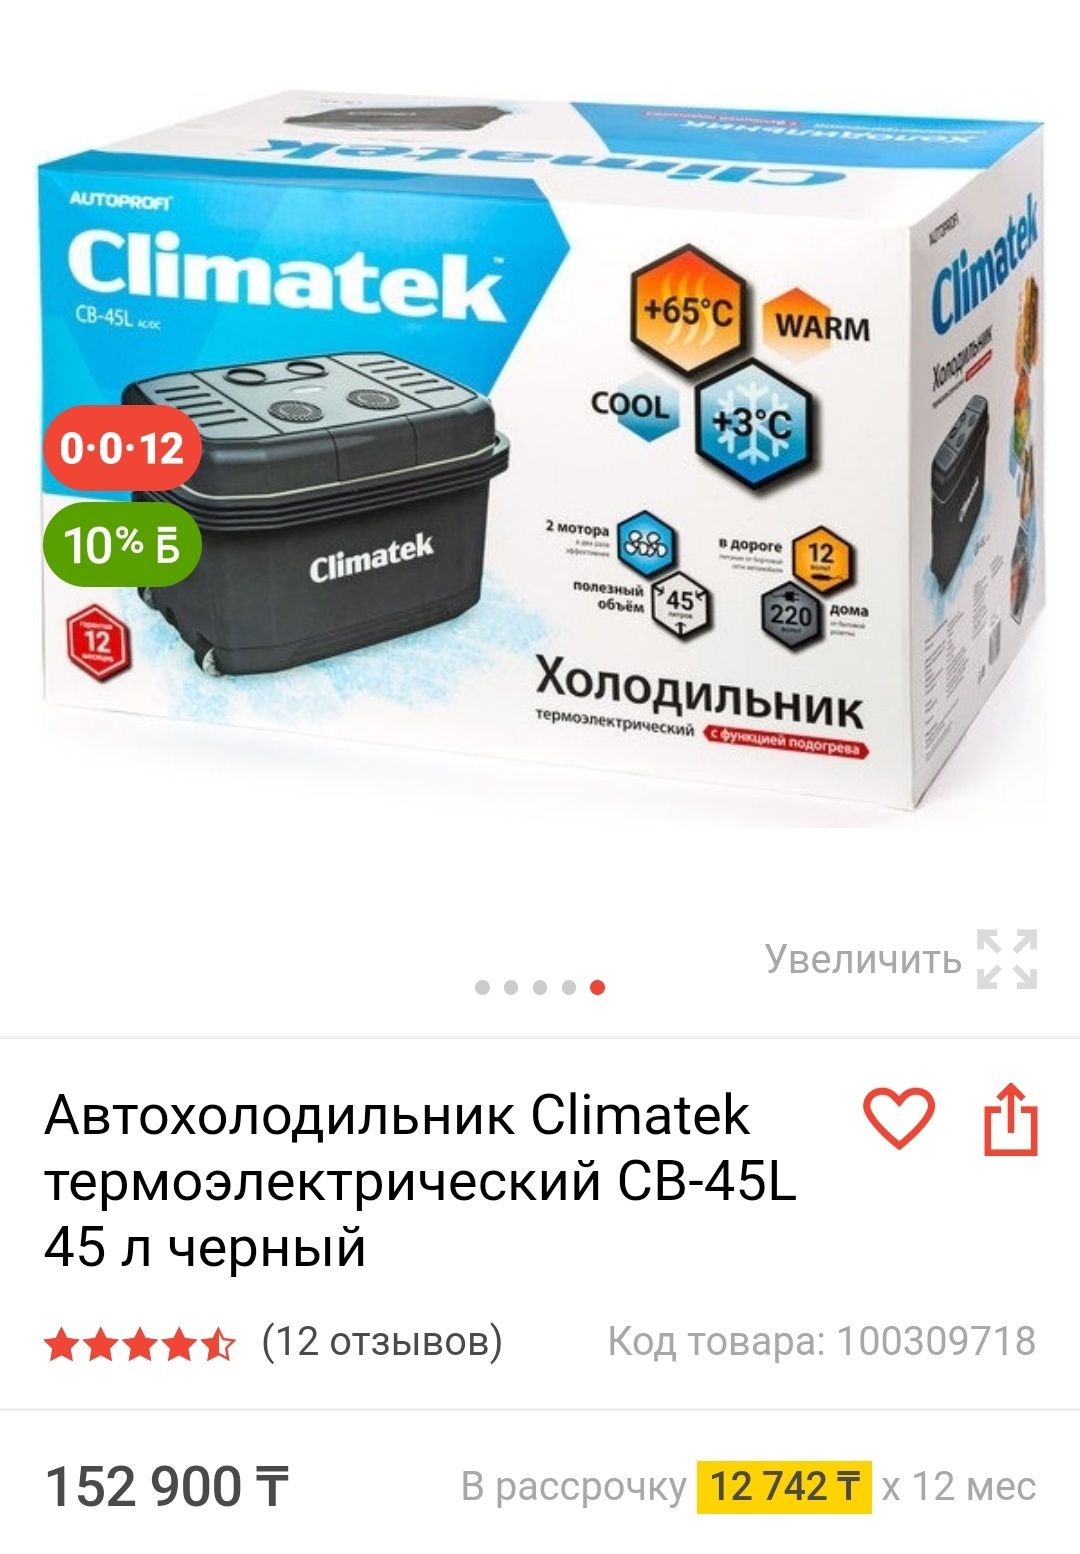 Продам холодильник универсальный фирмы Climatek для дома и отдыха